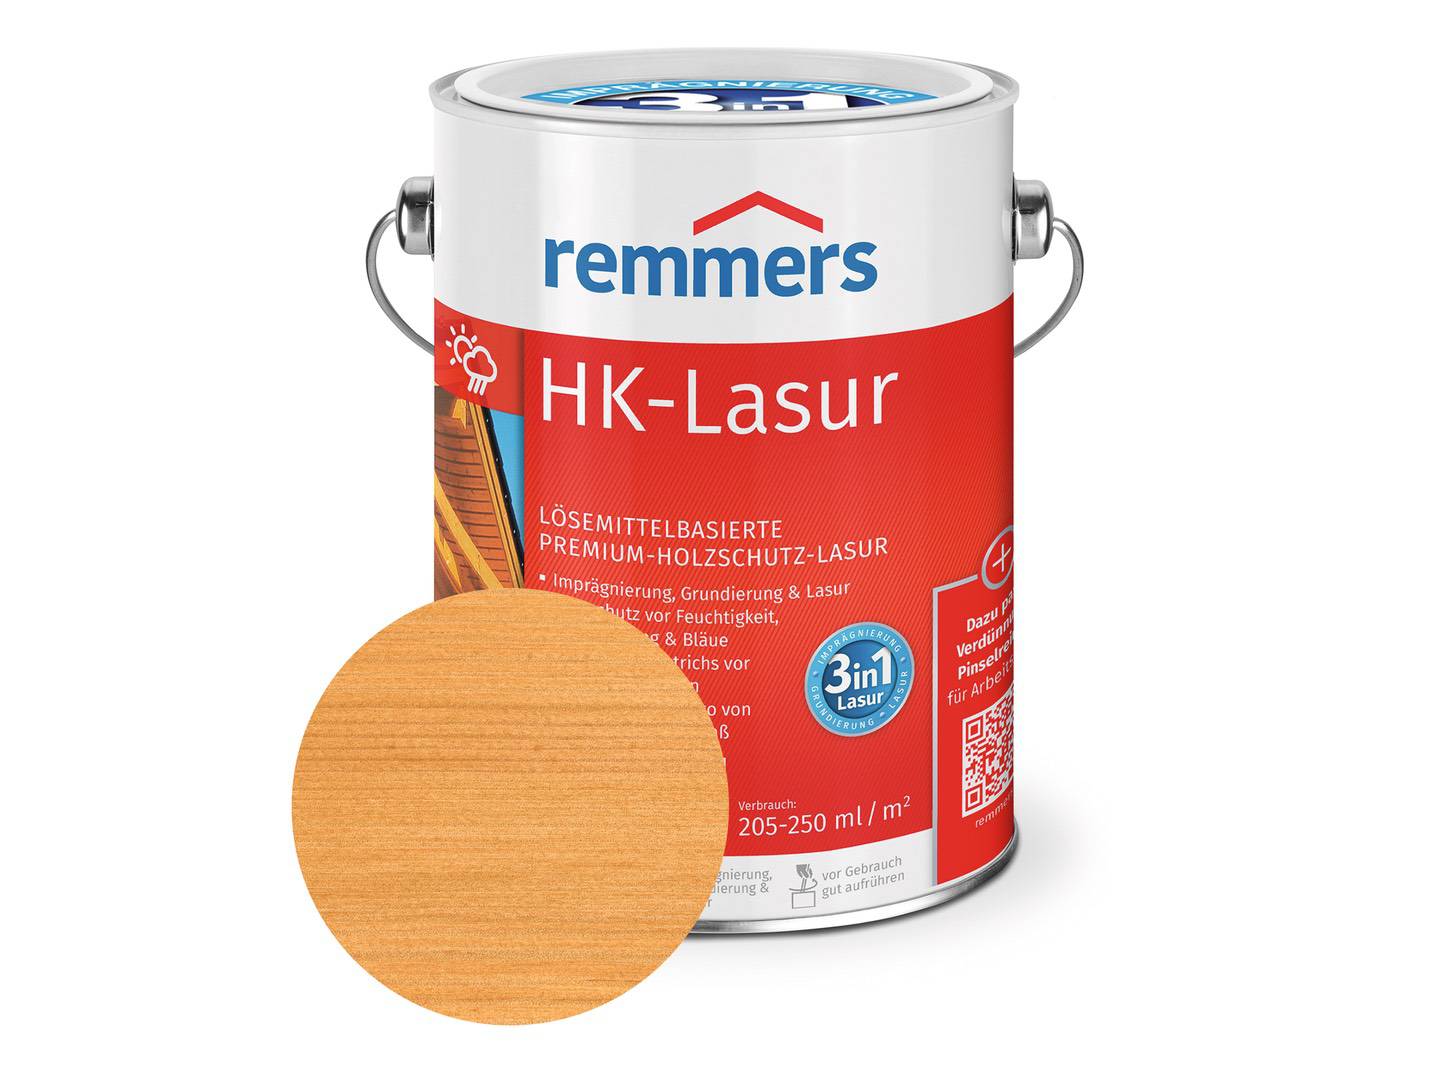 REMMERS HK-Lasur pinie/lärche (RC-260) 20 l